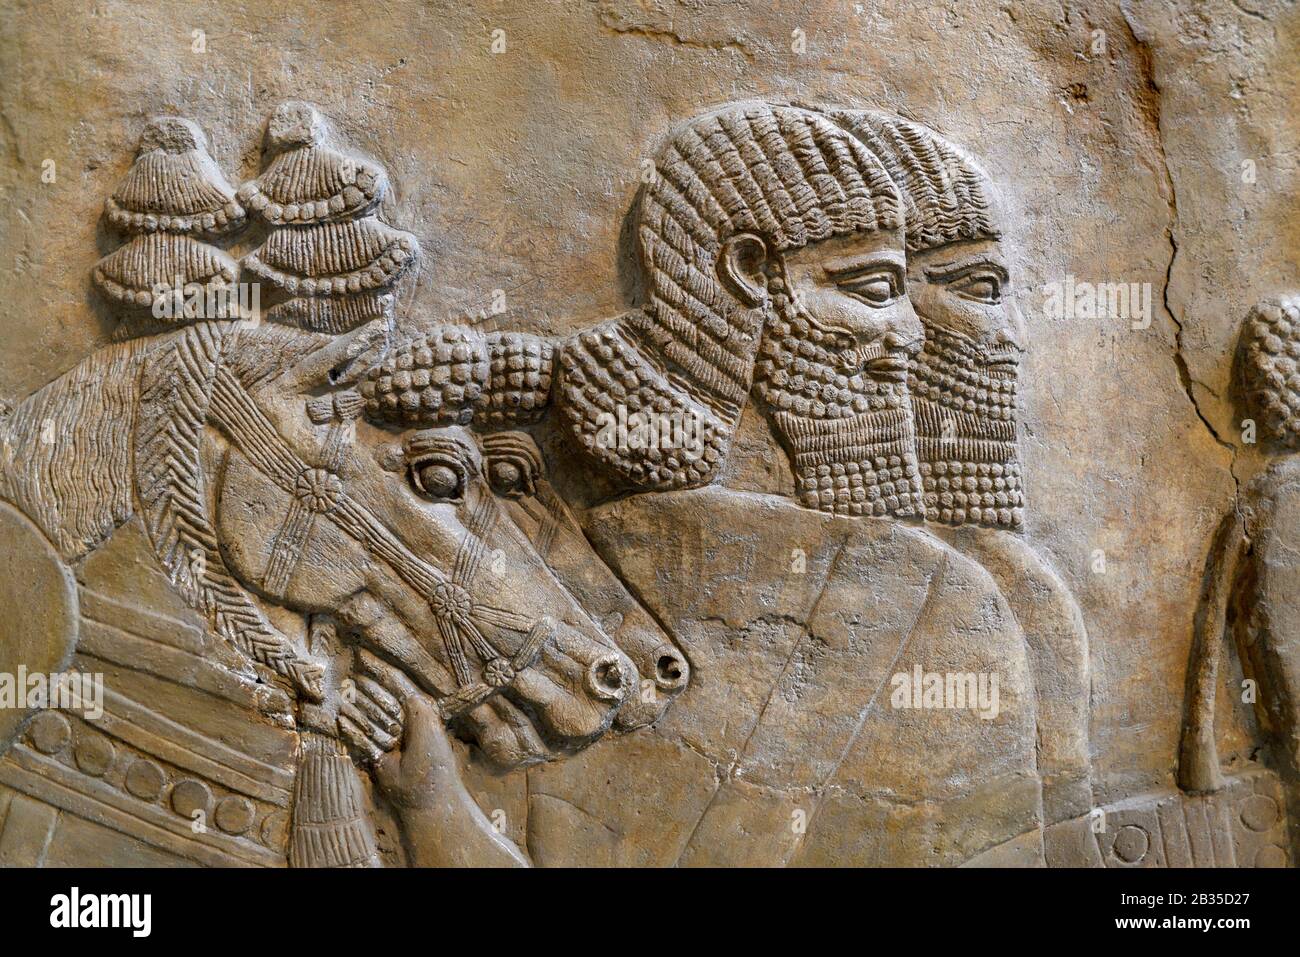 Details der assyrischen Steinschnitzerei (725v. Chr.) Aus Nimrod, Zentralpalast. British Museum, Bloomsbury, London, England, Großbritannien. Stockfoto